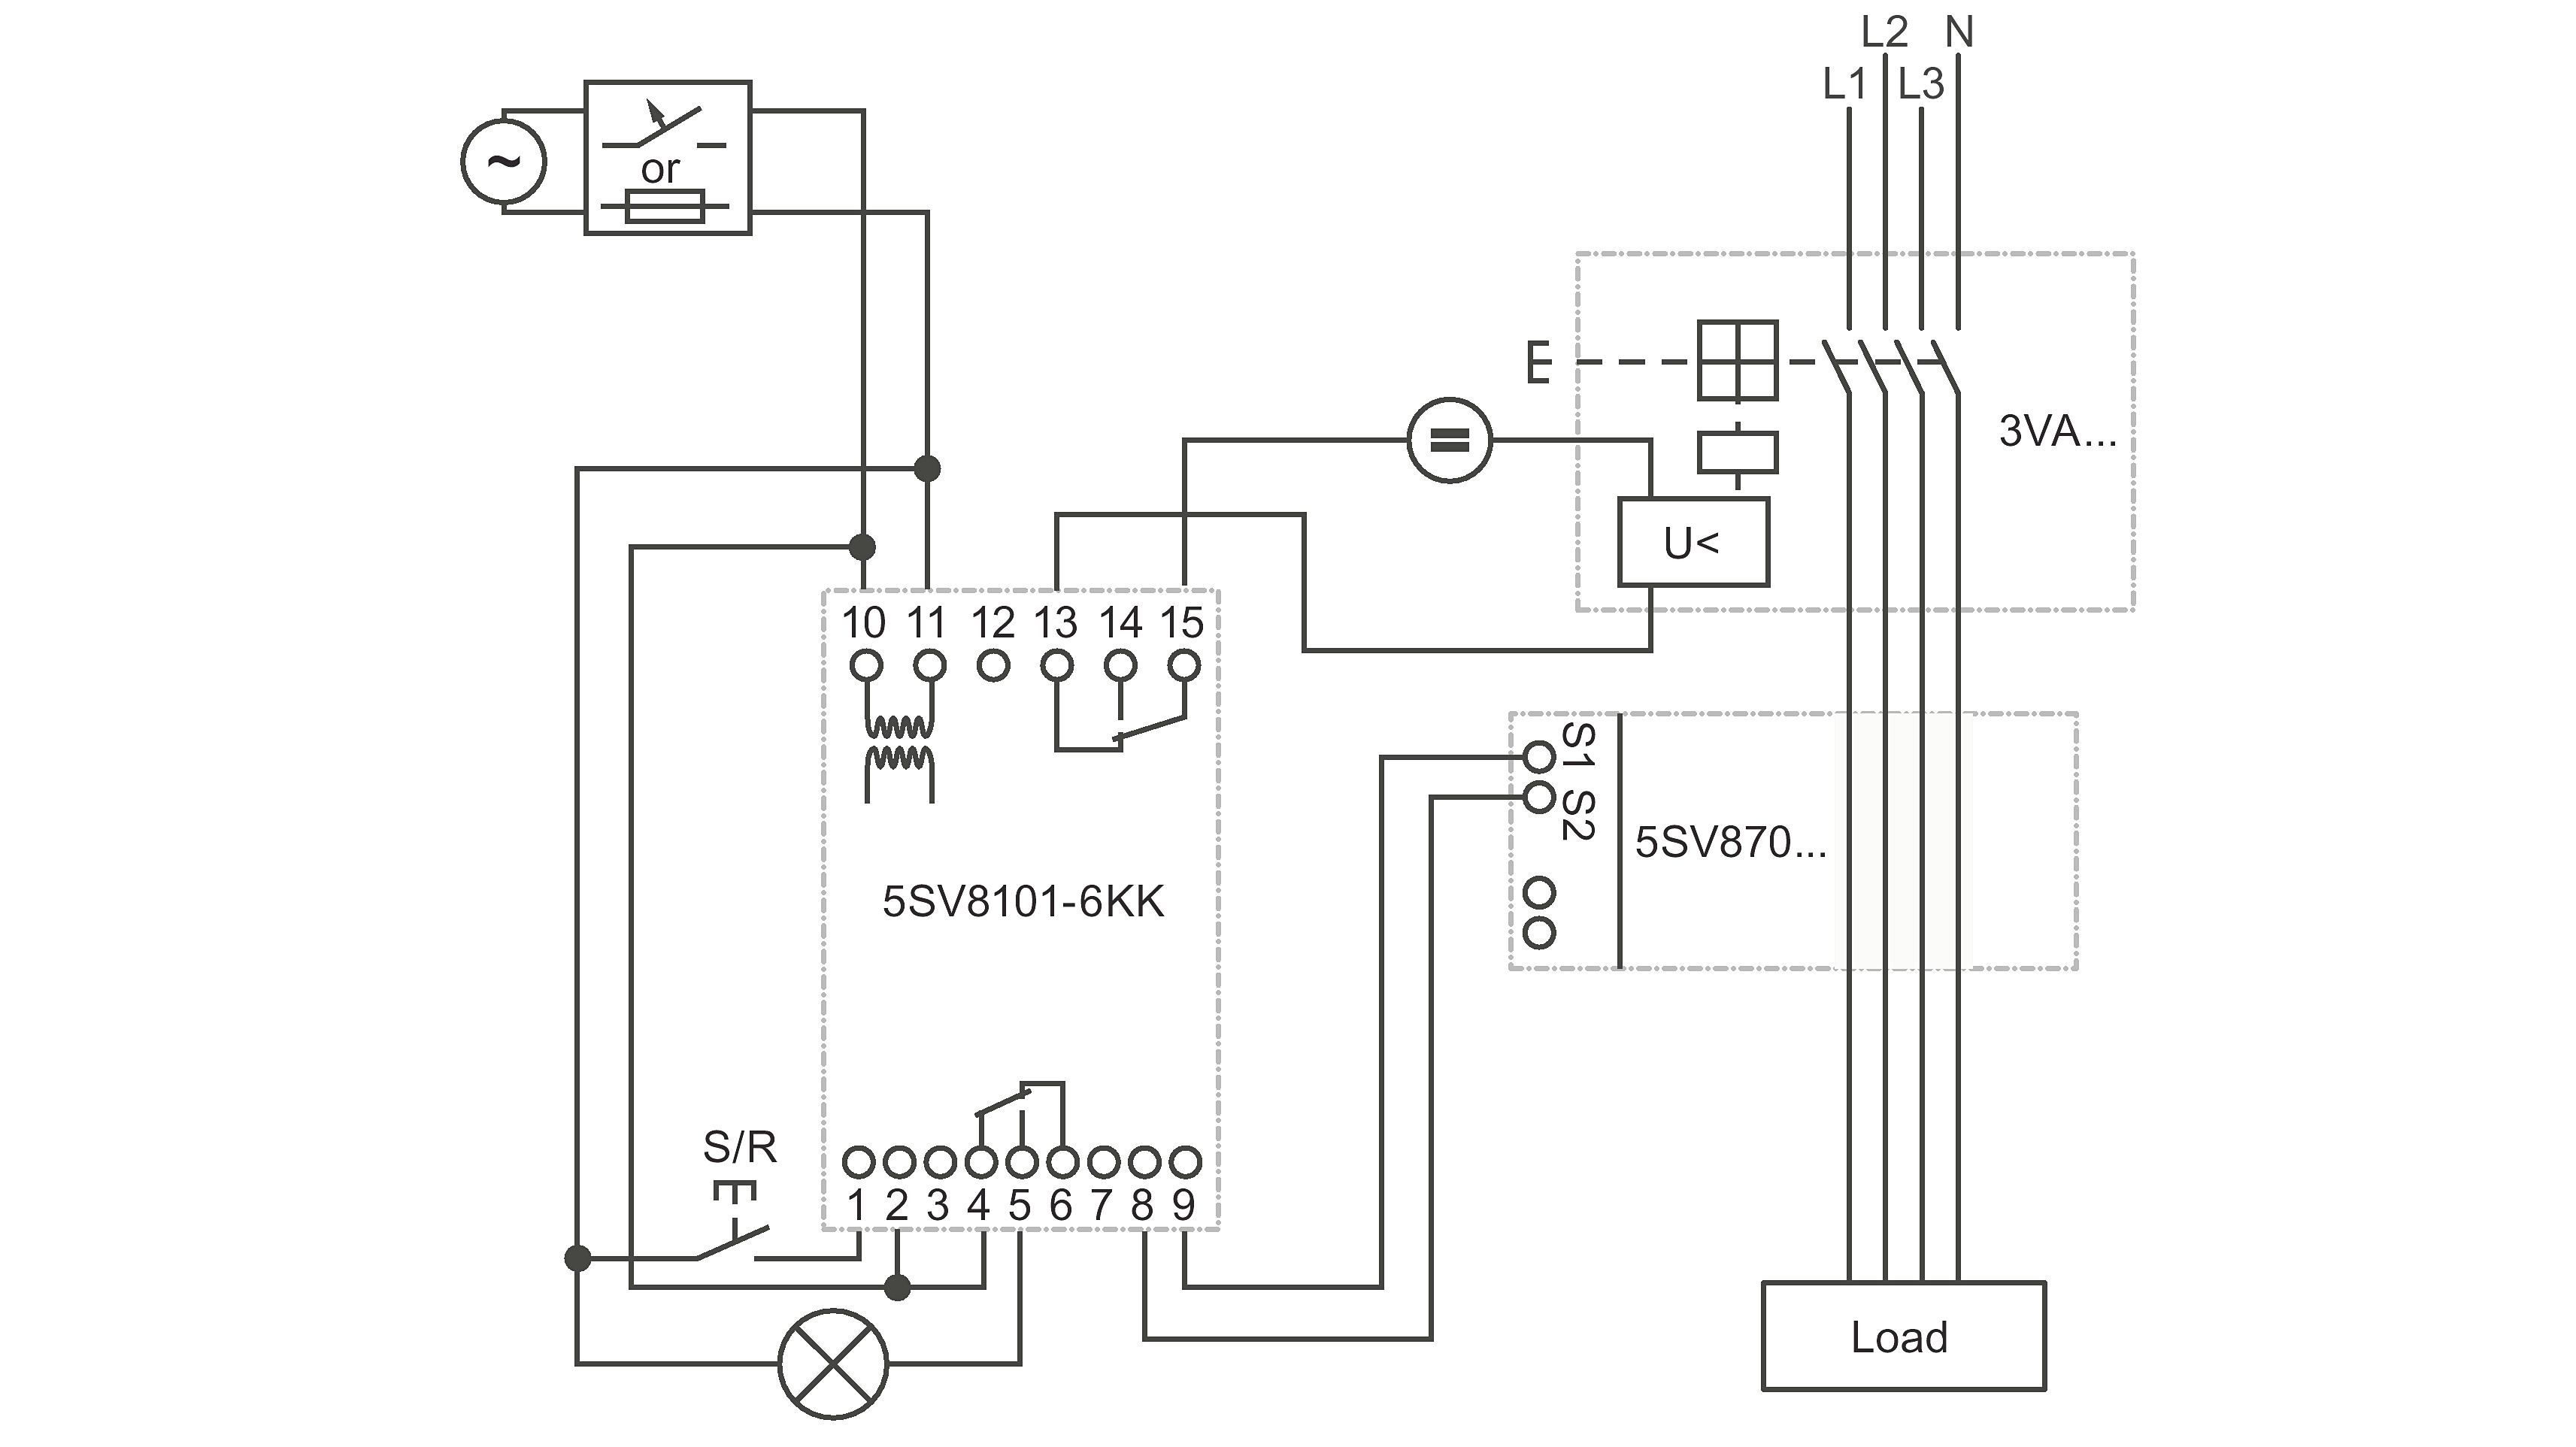 Wiring Diagram Shunt Trip Breaker Circuits This - All Wiring Diagram - Shunt Trip Breaker Wiring Diagram